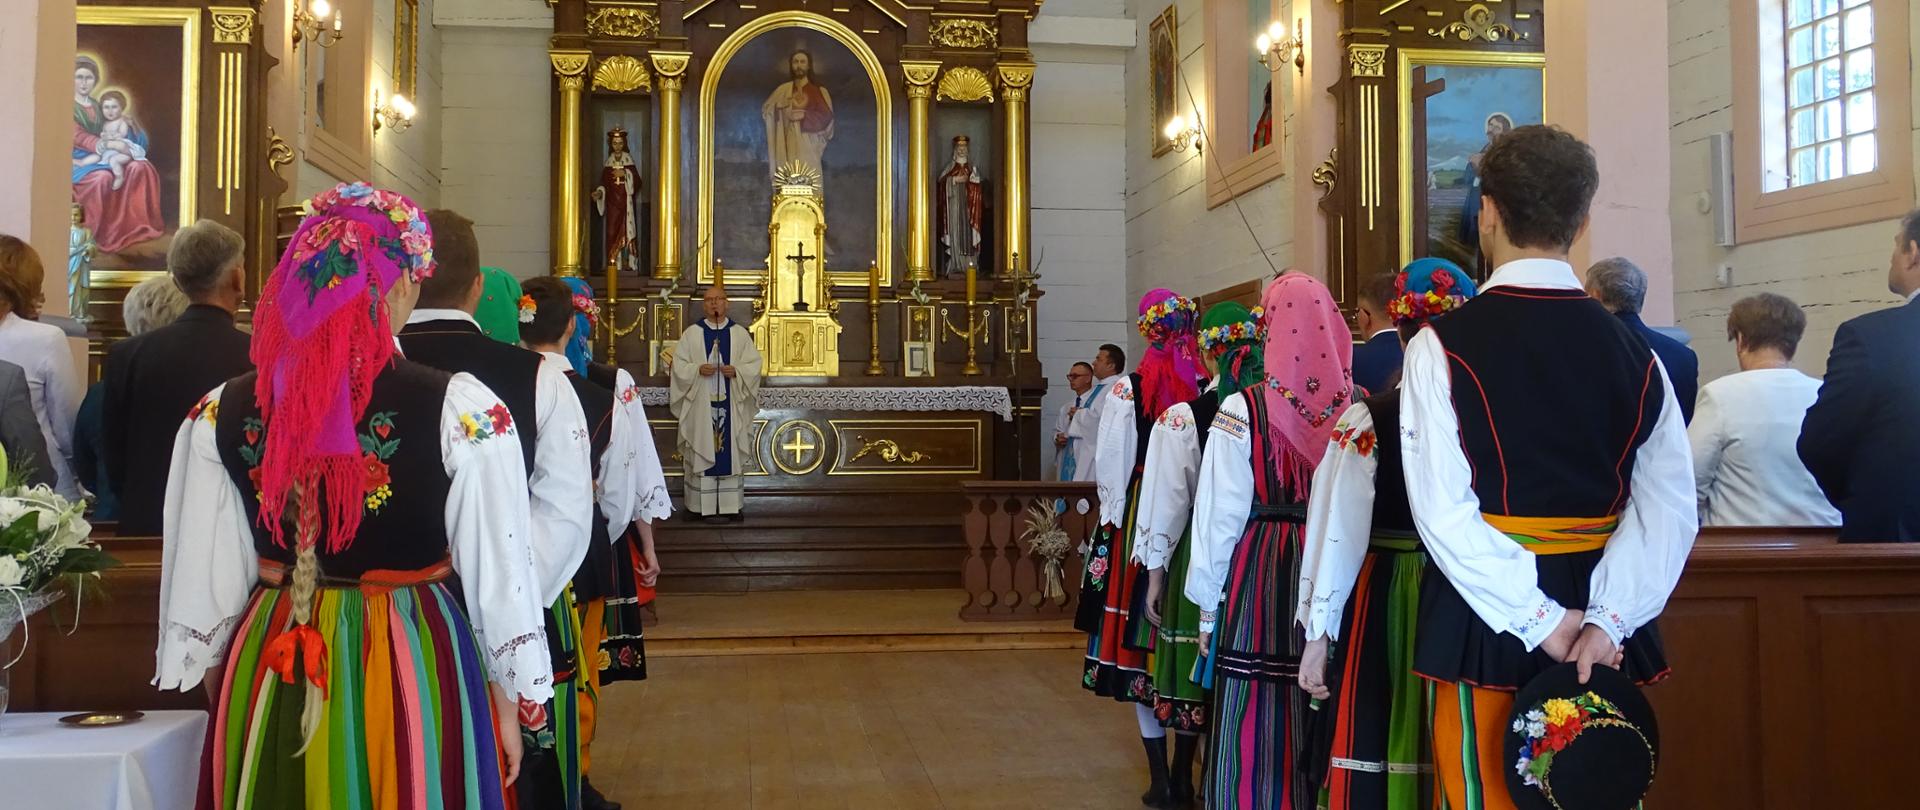 Na zdjęciu widać główny ołtarz w kościele, po lewej i prawej stronie stoją ludzie przy ławkach odwróceni tyłem